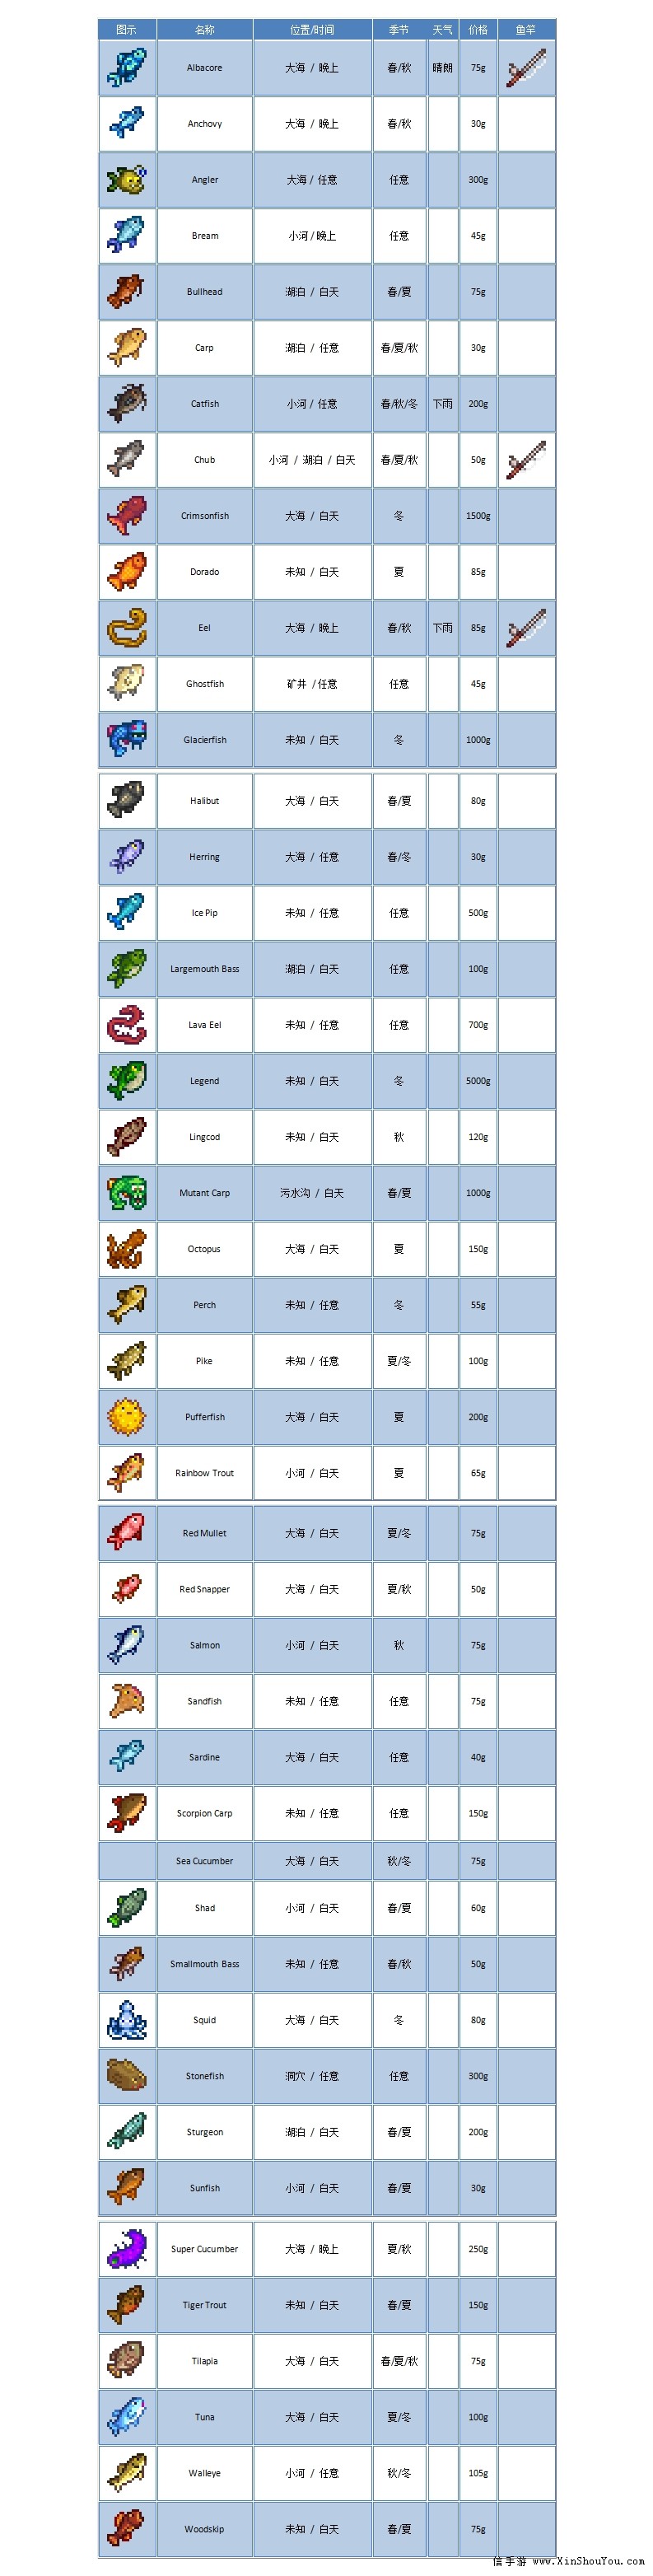 星露谷物语鱼图鉴 所有鱼的位置价格资料一览